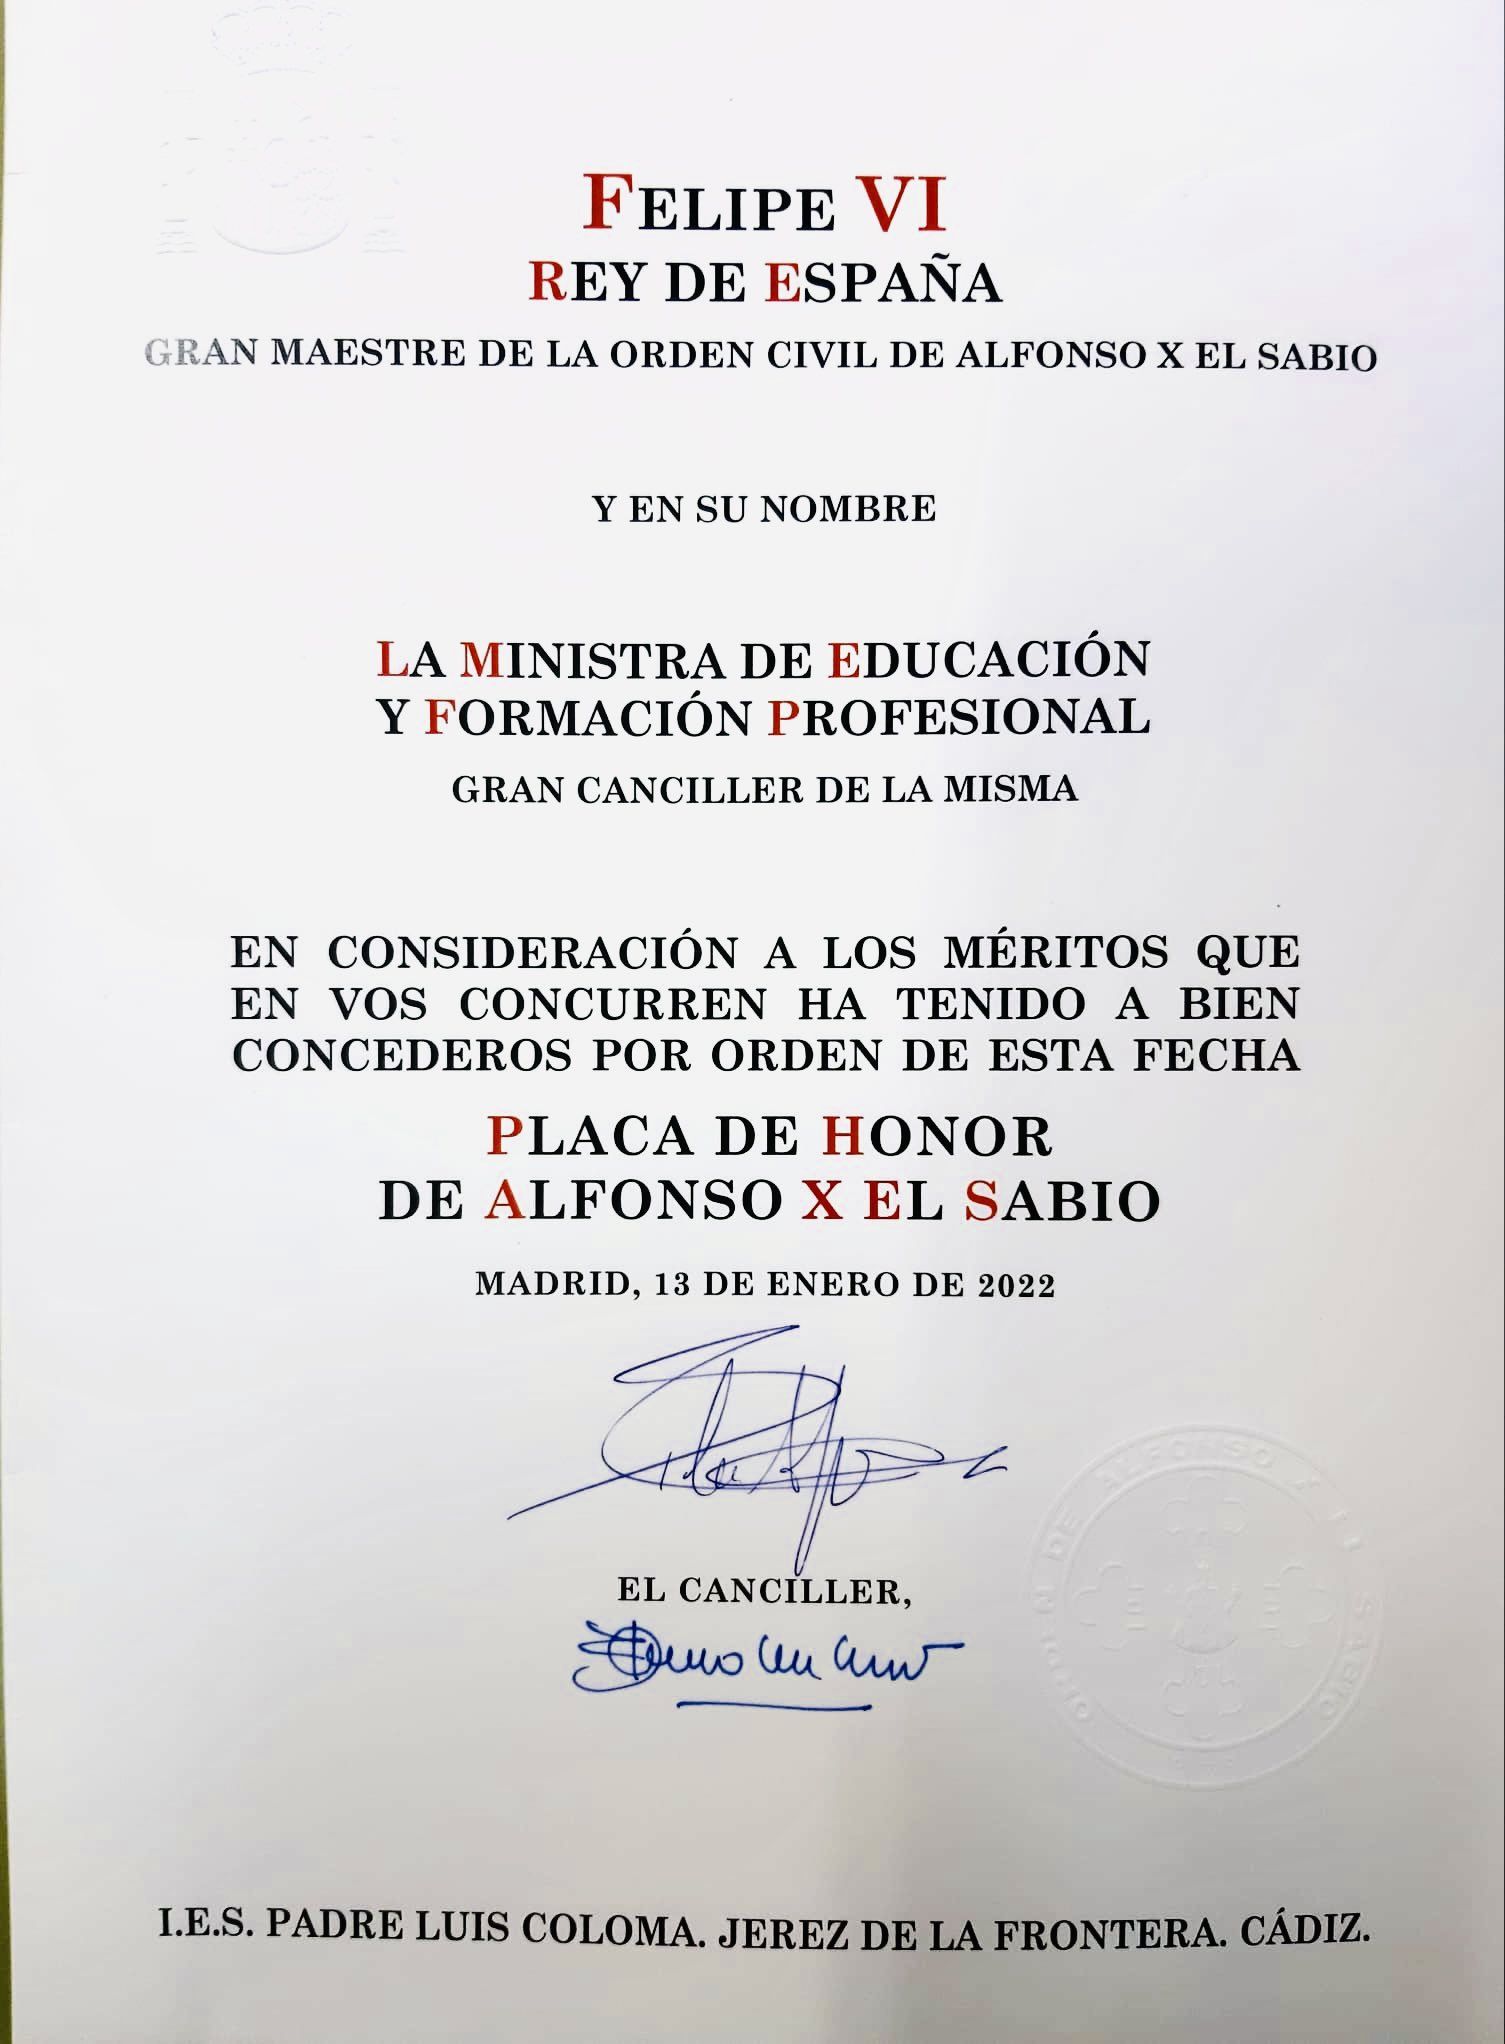 La Orden Civil de Alfonso X El Sabio otorgada al centro